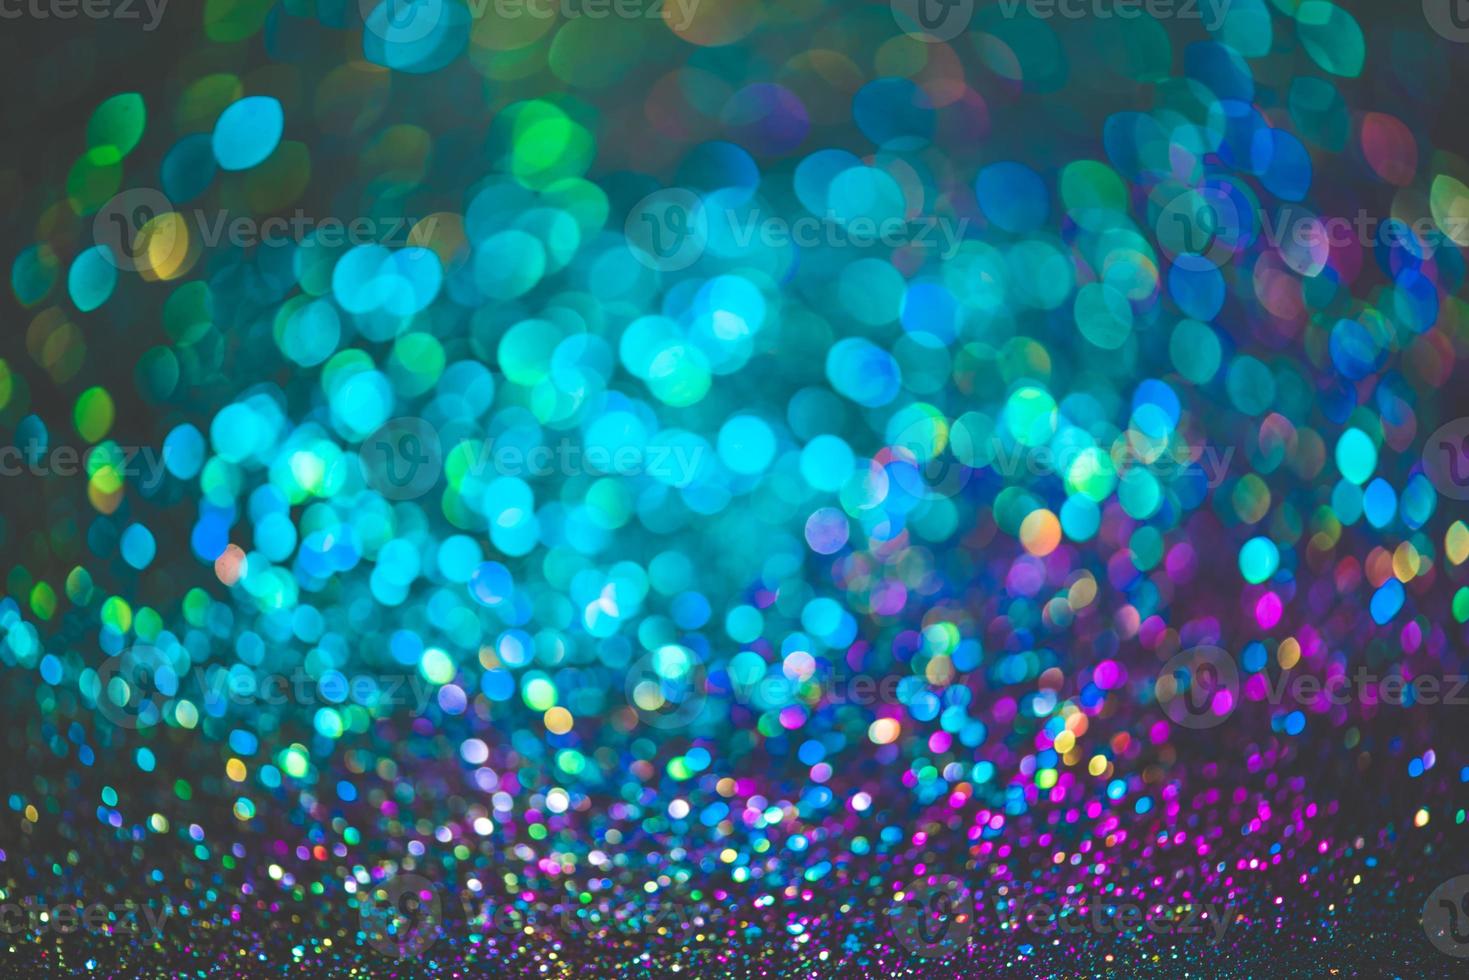 bokeh effect glitter kleurrijke wazig abstracte achtergrond voor verjaardag, jubileum, bruiloft, oudejaarsavond of kerst foto